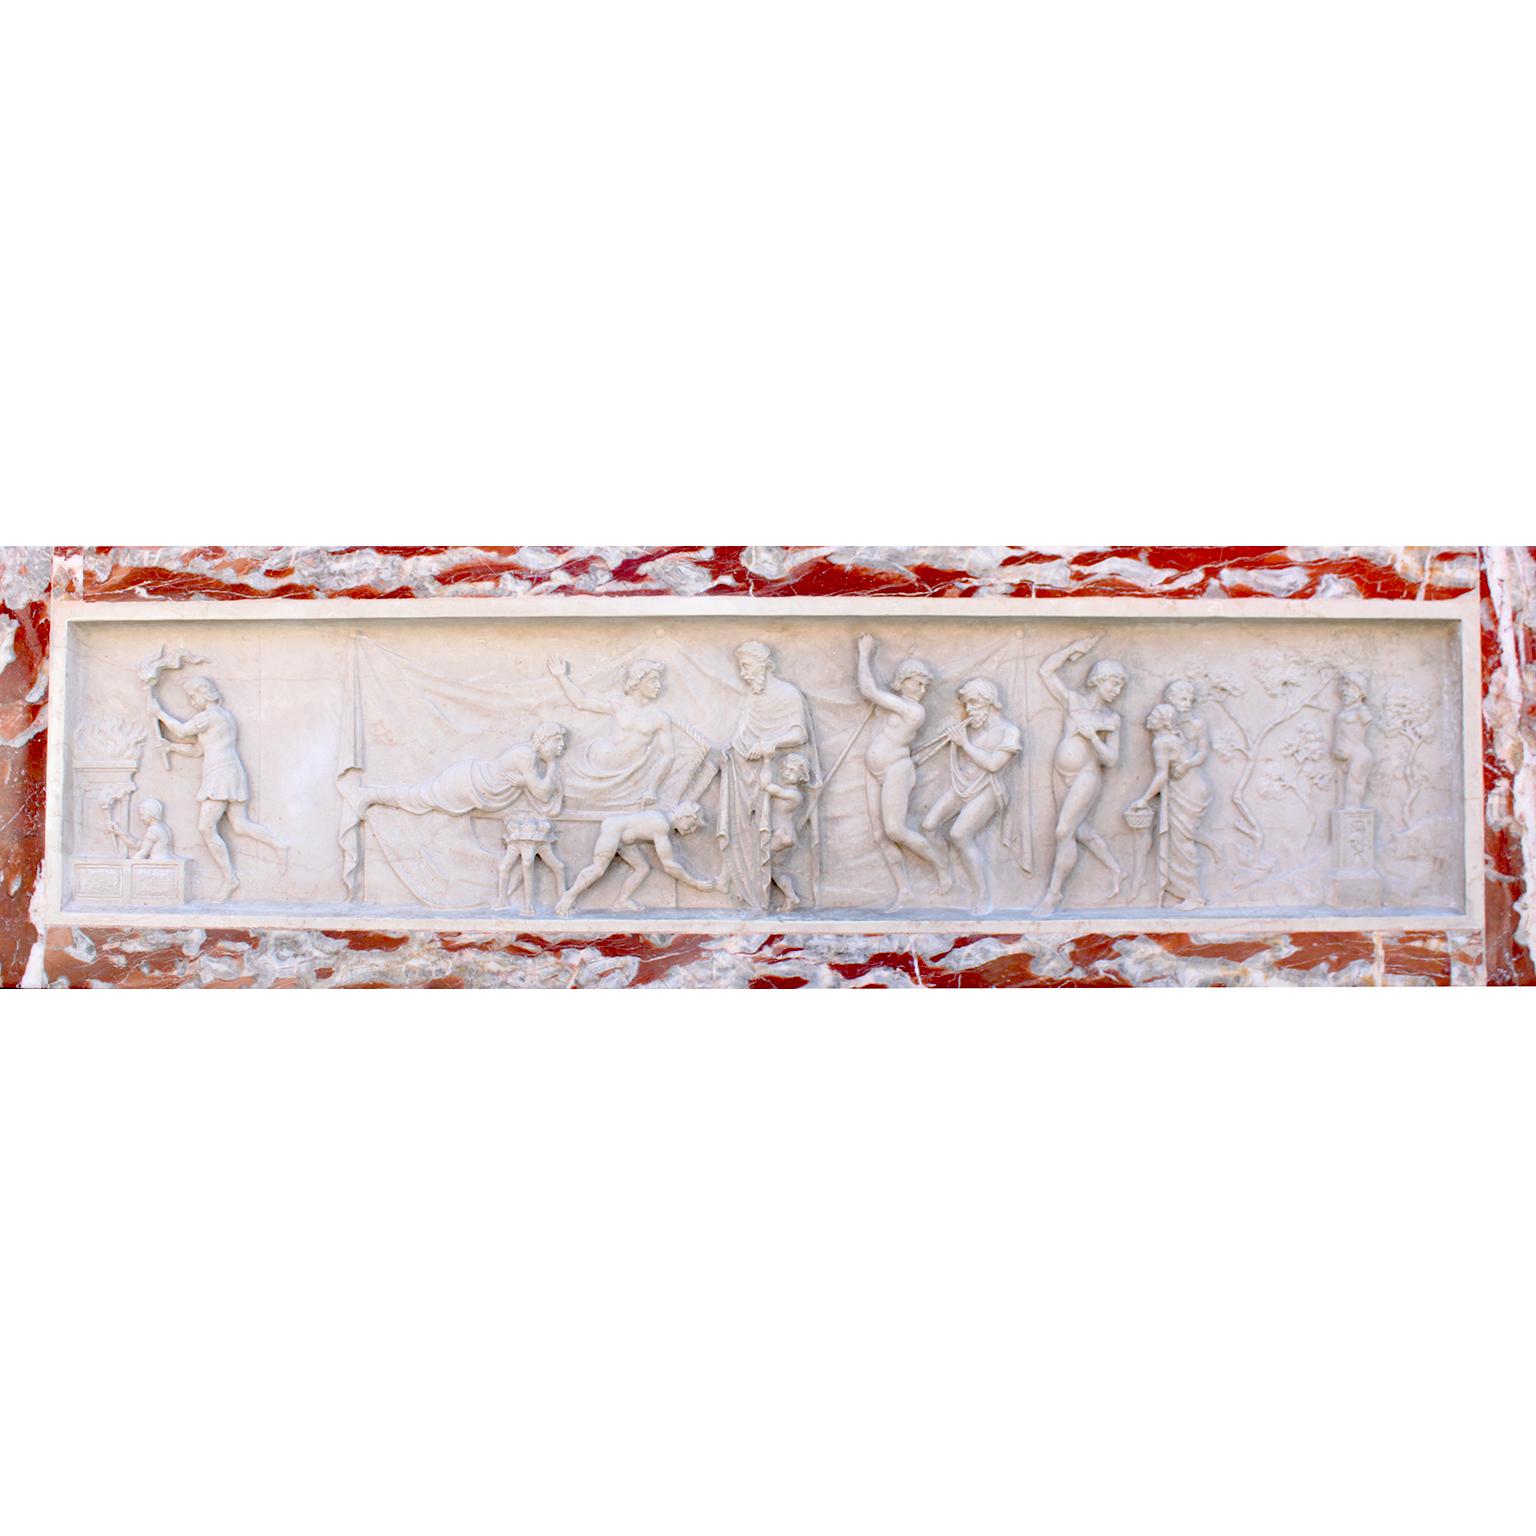 Très belle frise italienne de style gréco-romain du XIXe siècle, sculptée en bas-relief de marbre de Carrare, d'après l'antique. Frise en marbre blanc finement sculptée en relief, représentant une scène mythologique de la vie quotidienne dans la